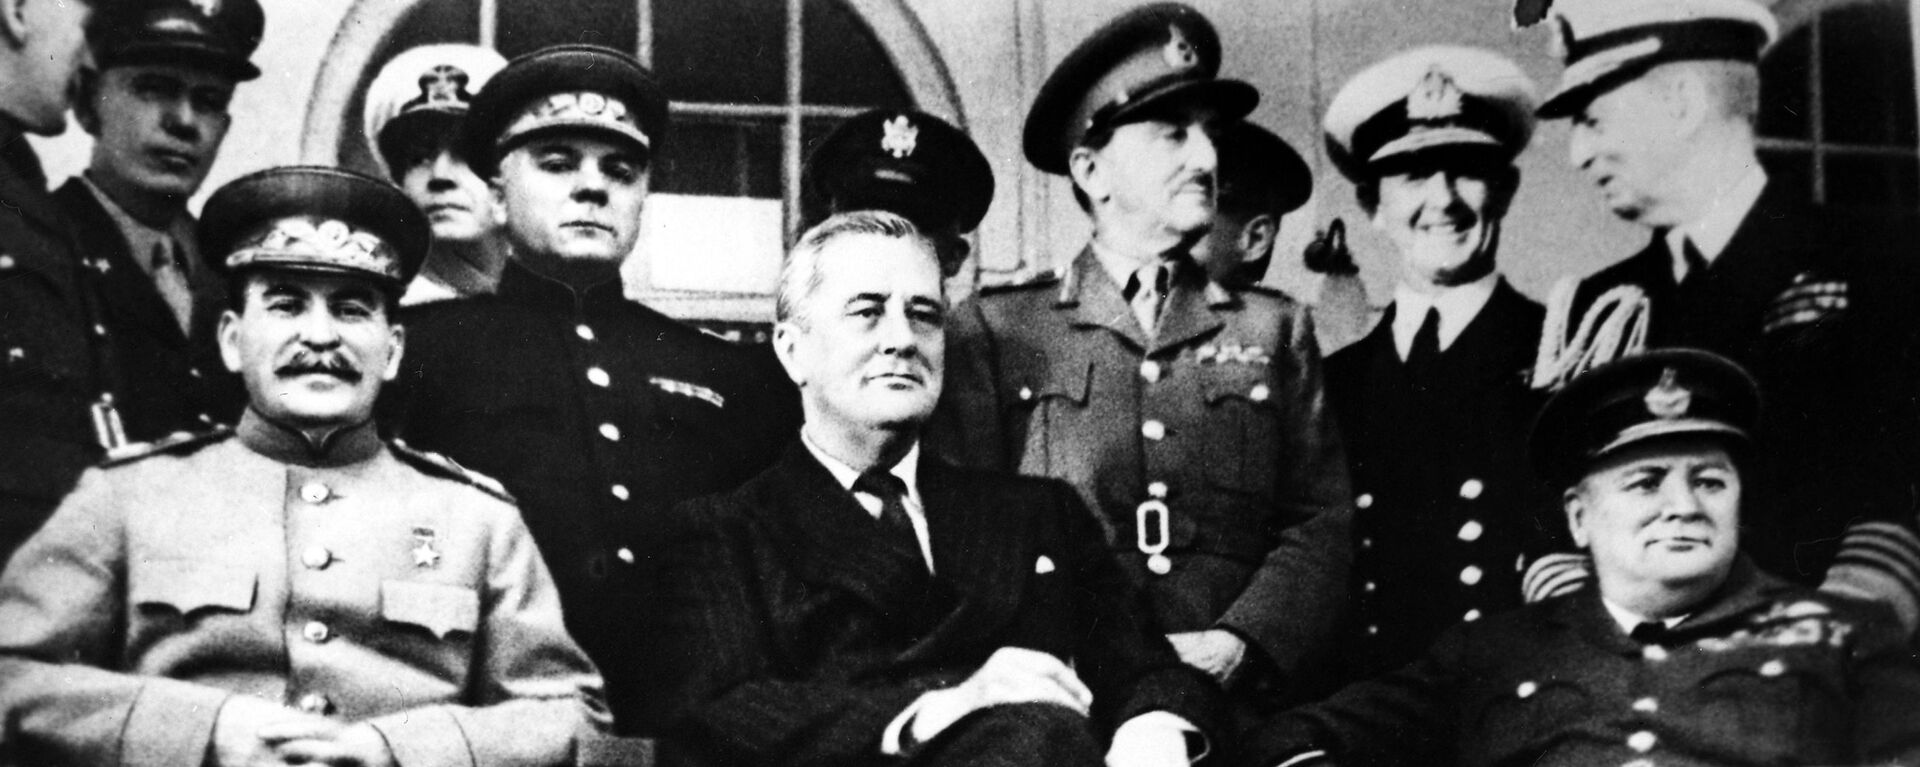 Председатель СССР Иосиф Сталин, президент США Франклин Рузвельт и премьер-министр Великобритании Уинстон Черчилль на Тегеранской конференции, 1943 год - Sputnik Latvija, 1920, 29.11.2021